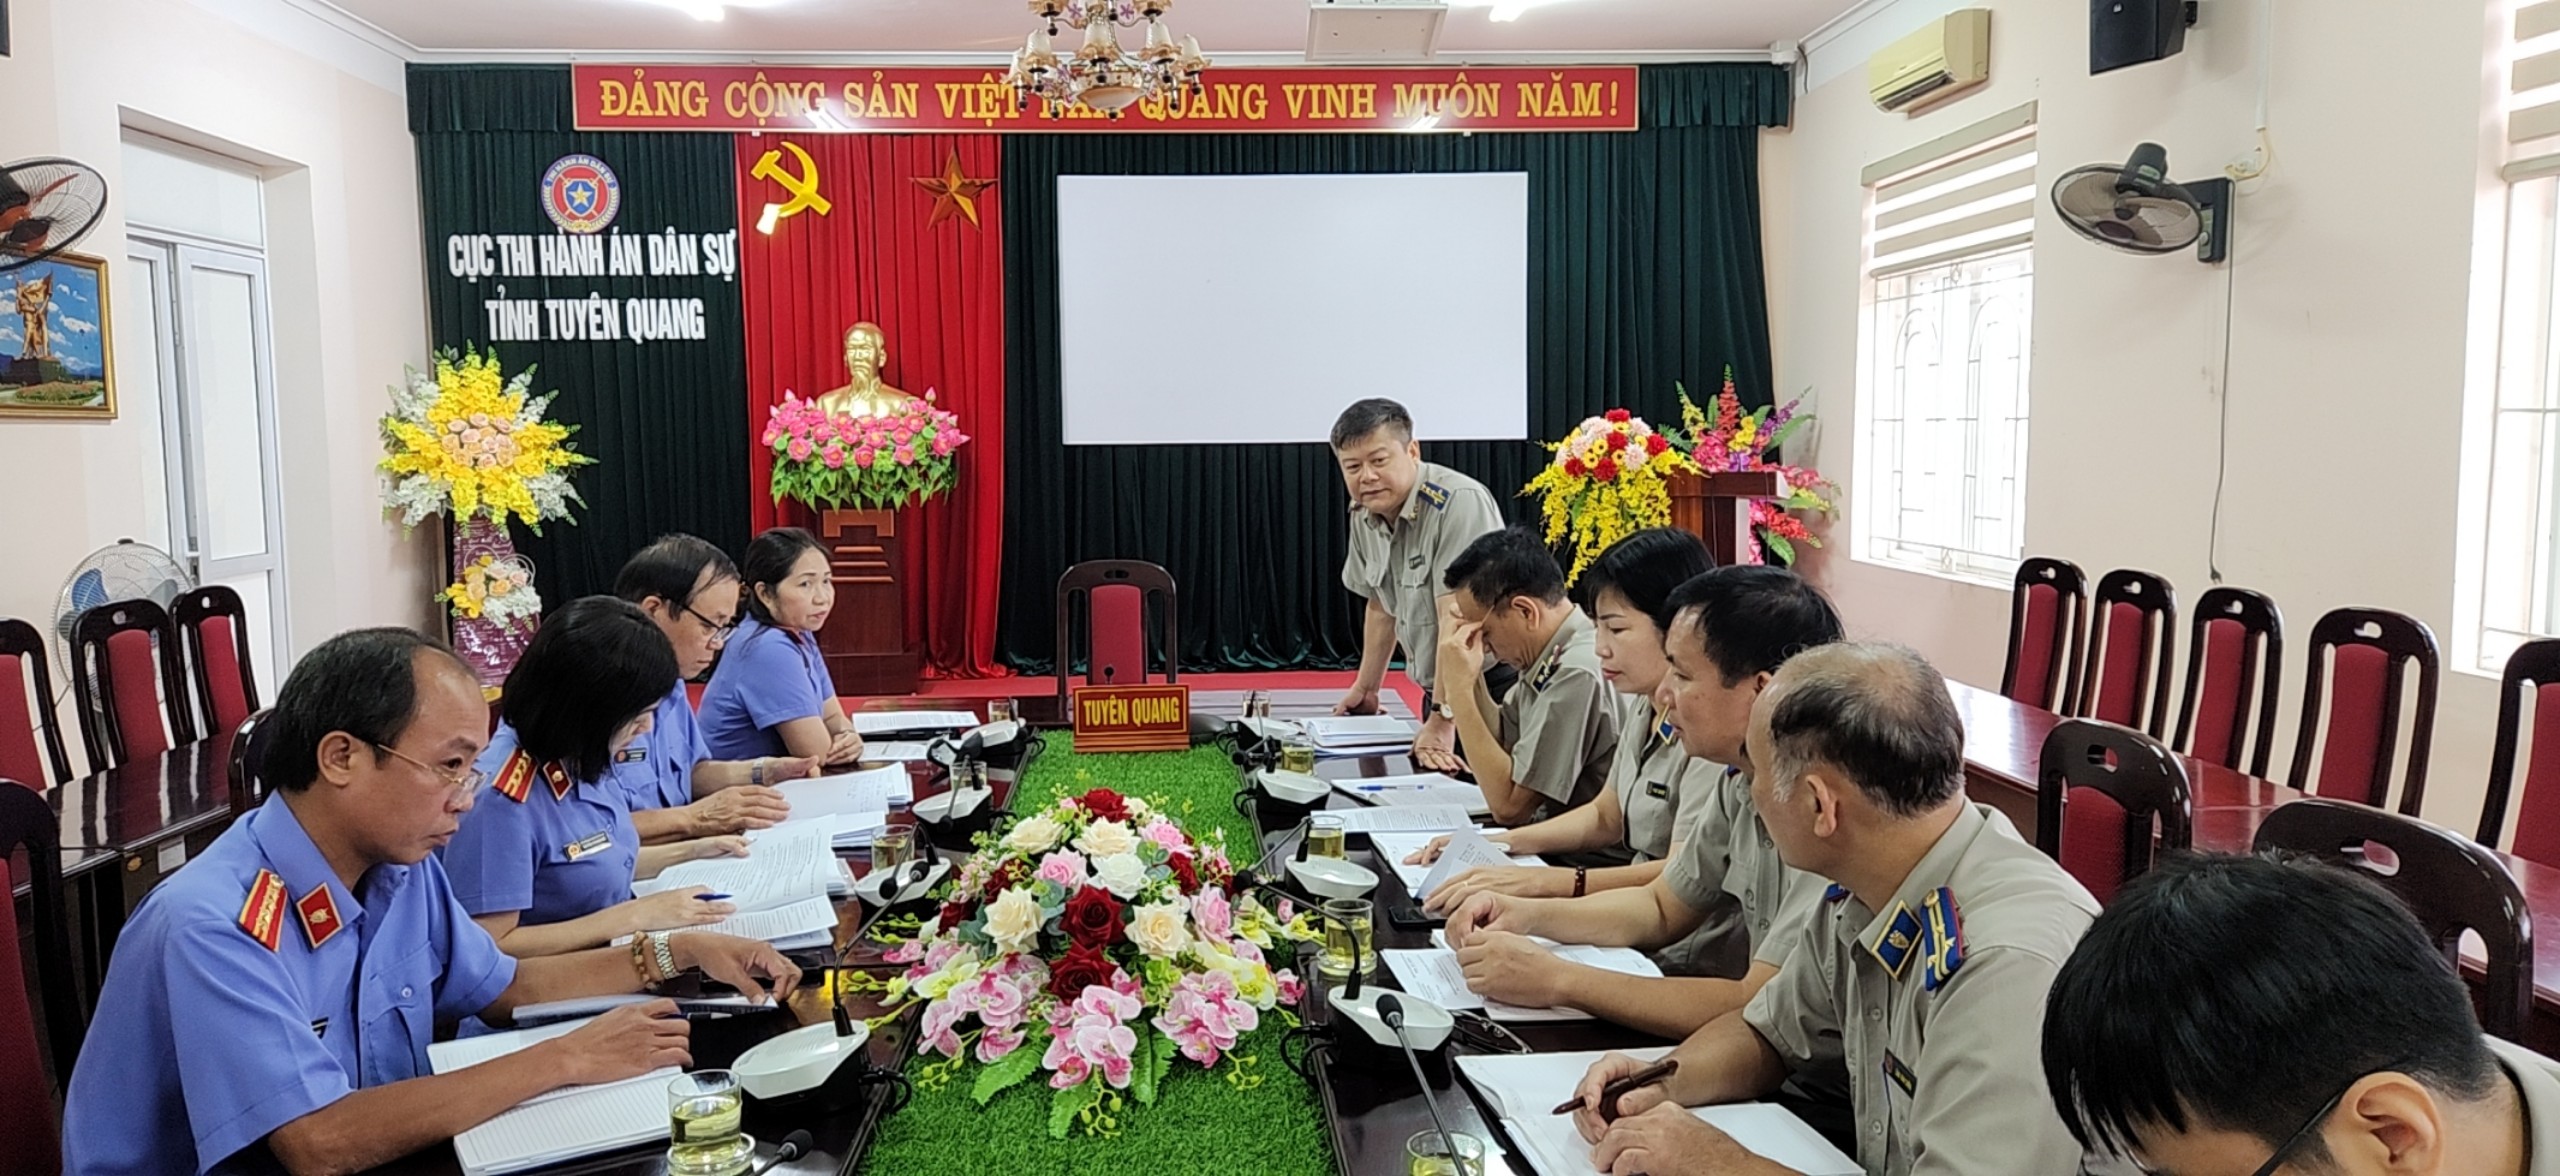 Đoàn kiểm tra của Viện kiểm sát nhân dân tối cao làm việc với Cục Thi hành án dân sự tỉnh Tuyên Quang